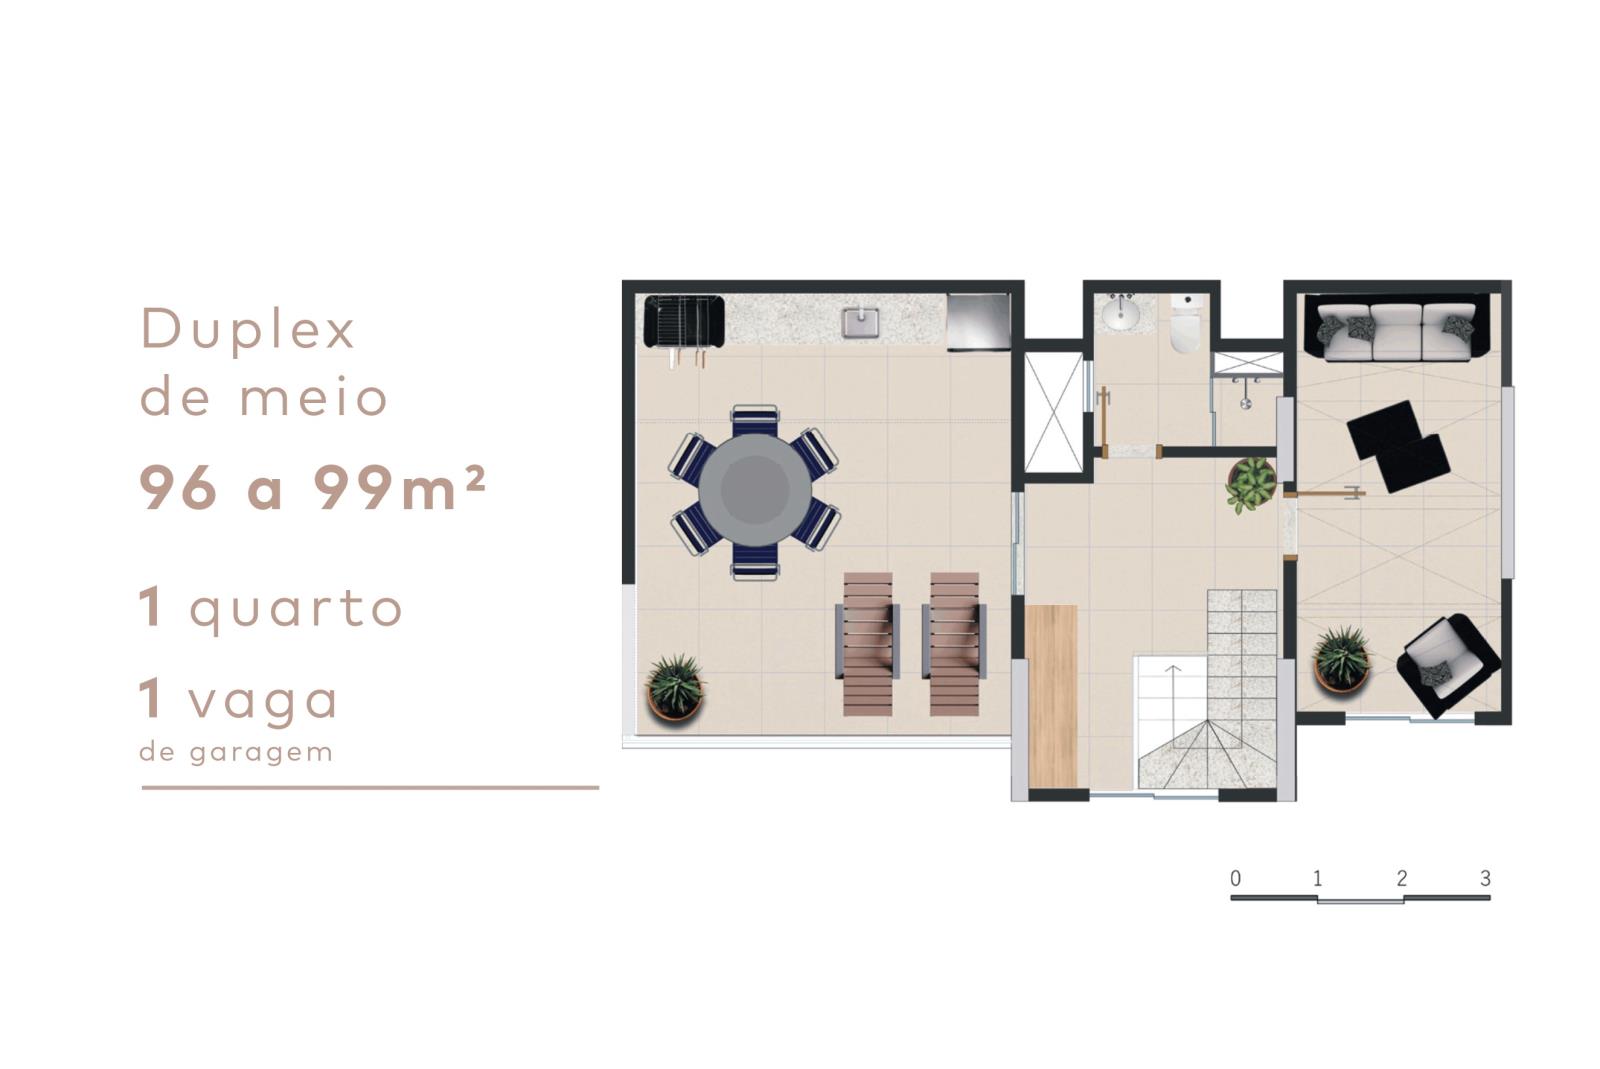 Duplex de meio - 2º piso - Max Premium